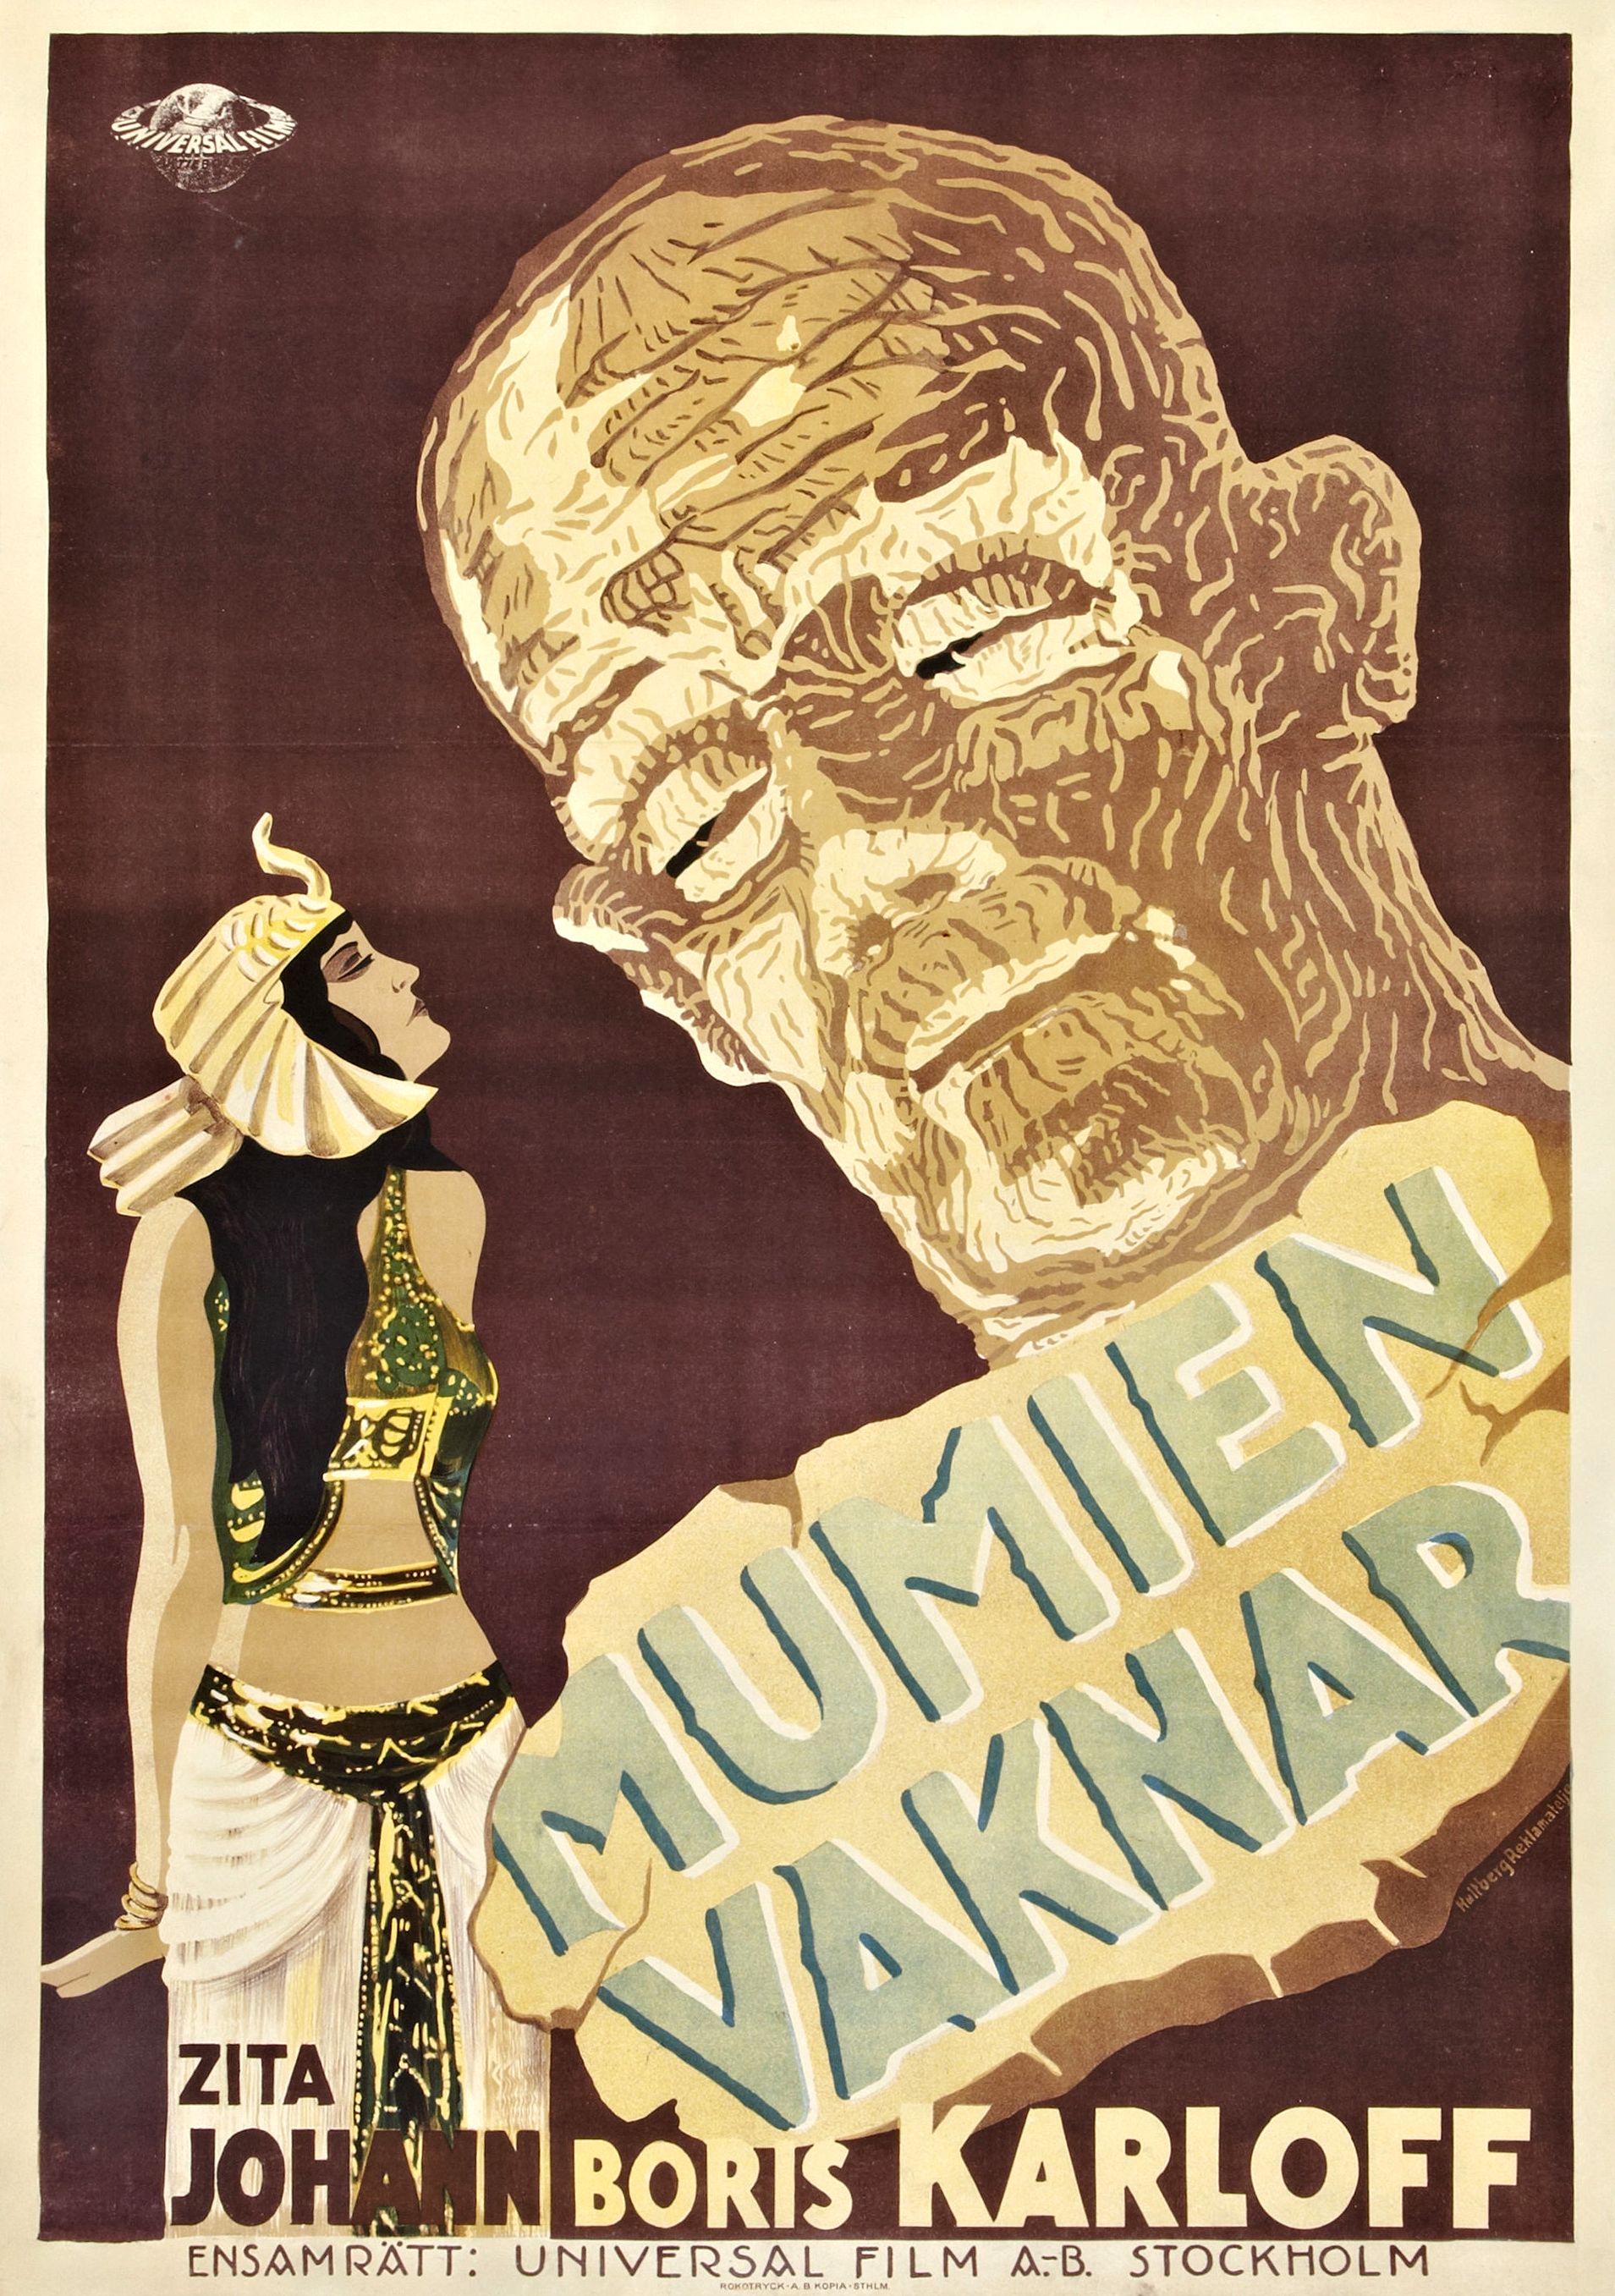 The Mummy, 1932